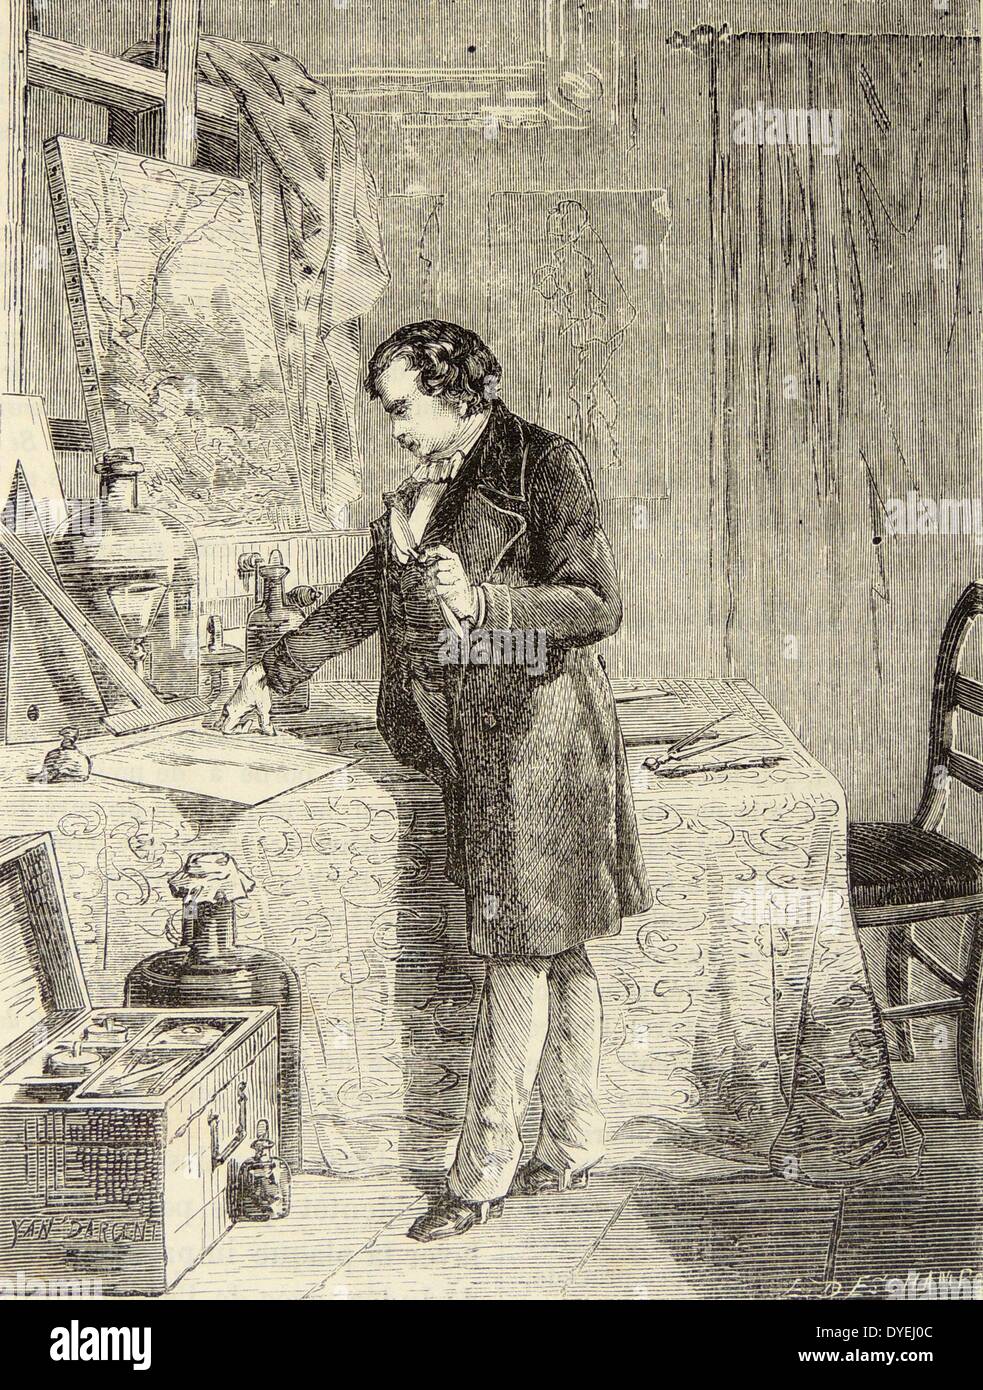 Künstlerische Darstellung von Louis Daguerre (1789-1851) Französischer Pionier der Fotografie, die Entdeckung der Lichtempfindlichkeit von Silber Jodid. Gravur, Paris, c 1870 Stockfoto